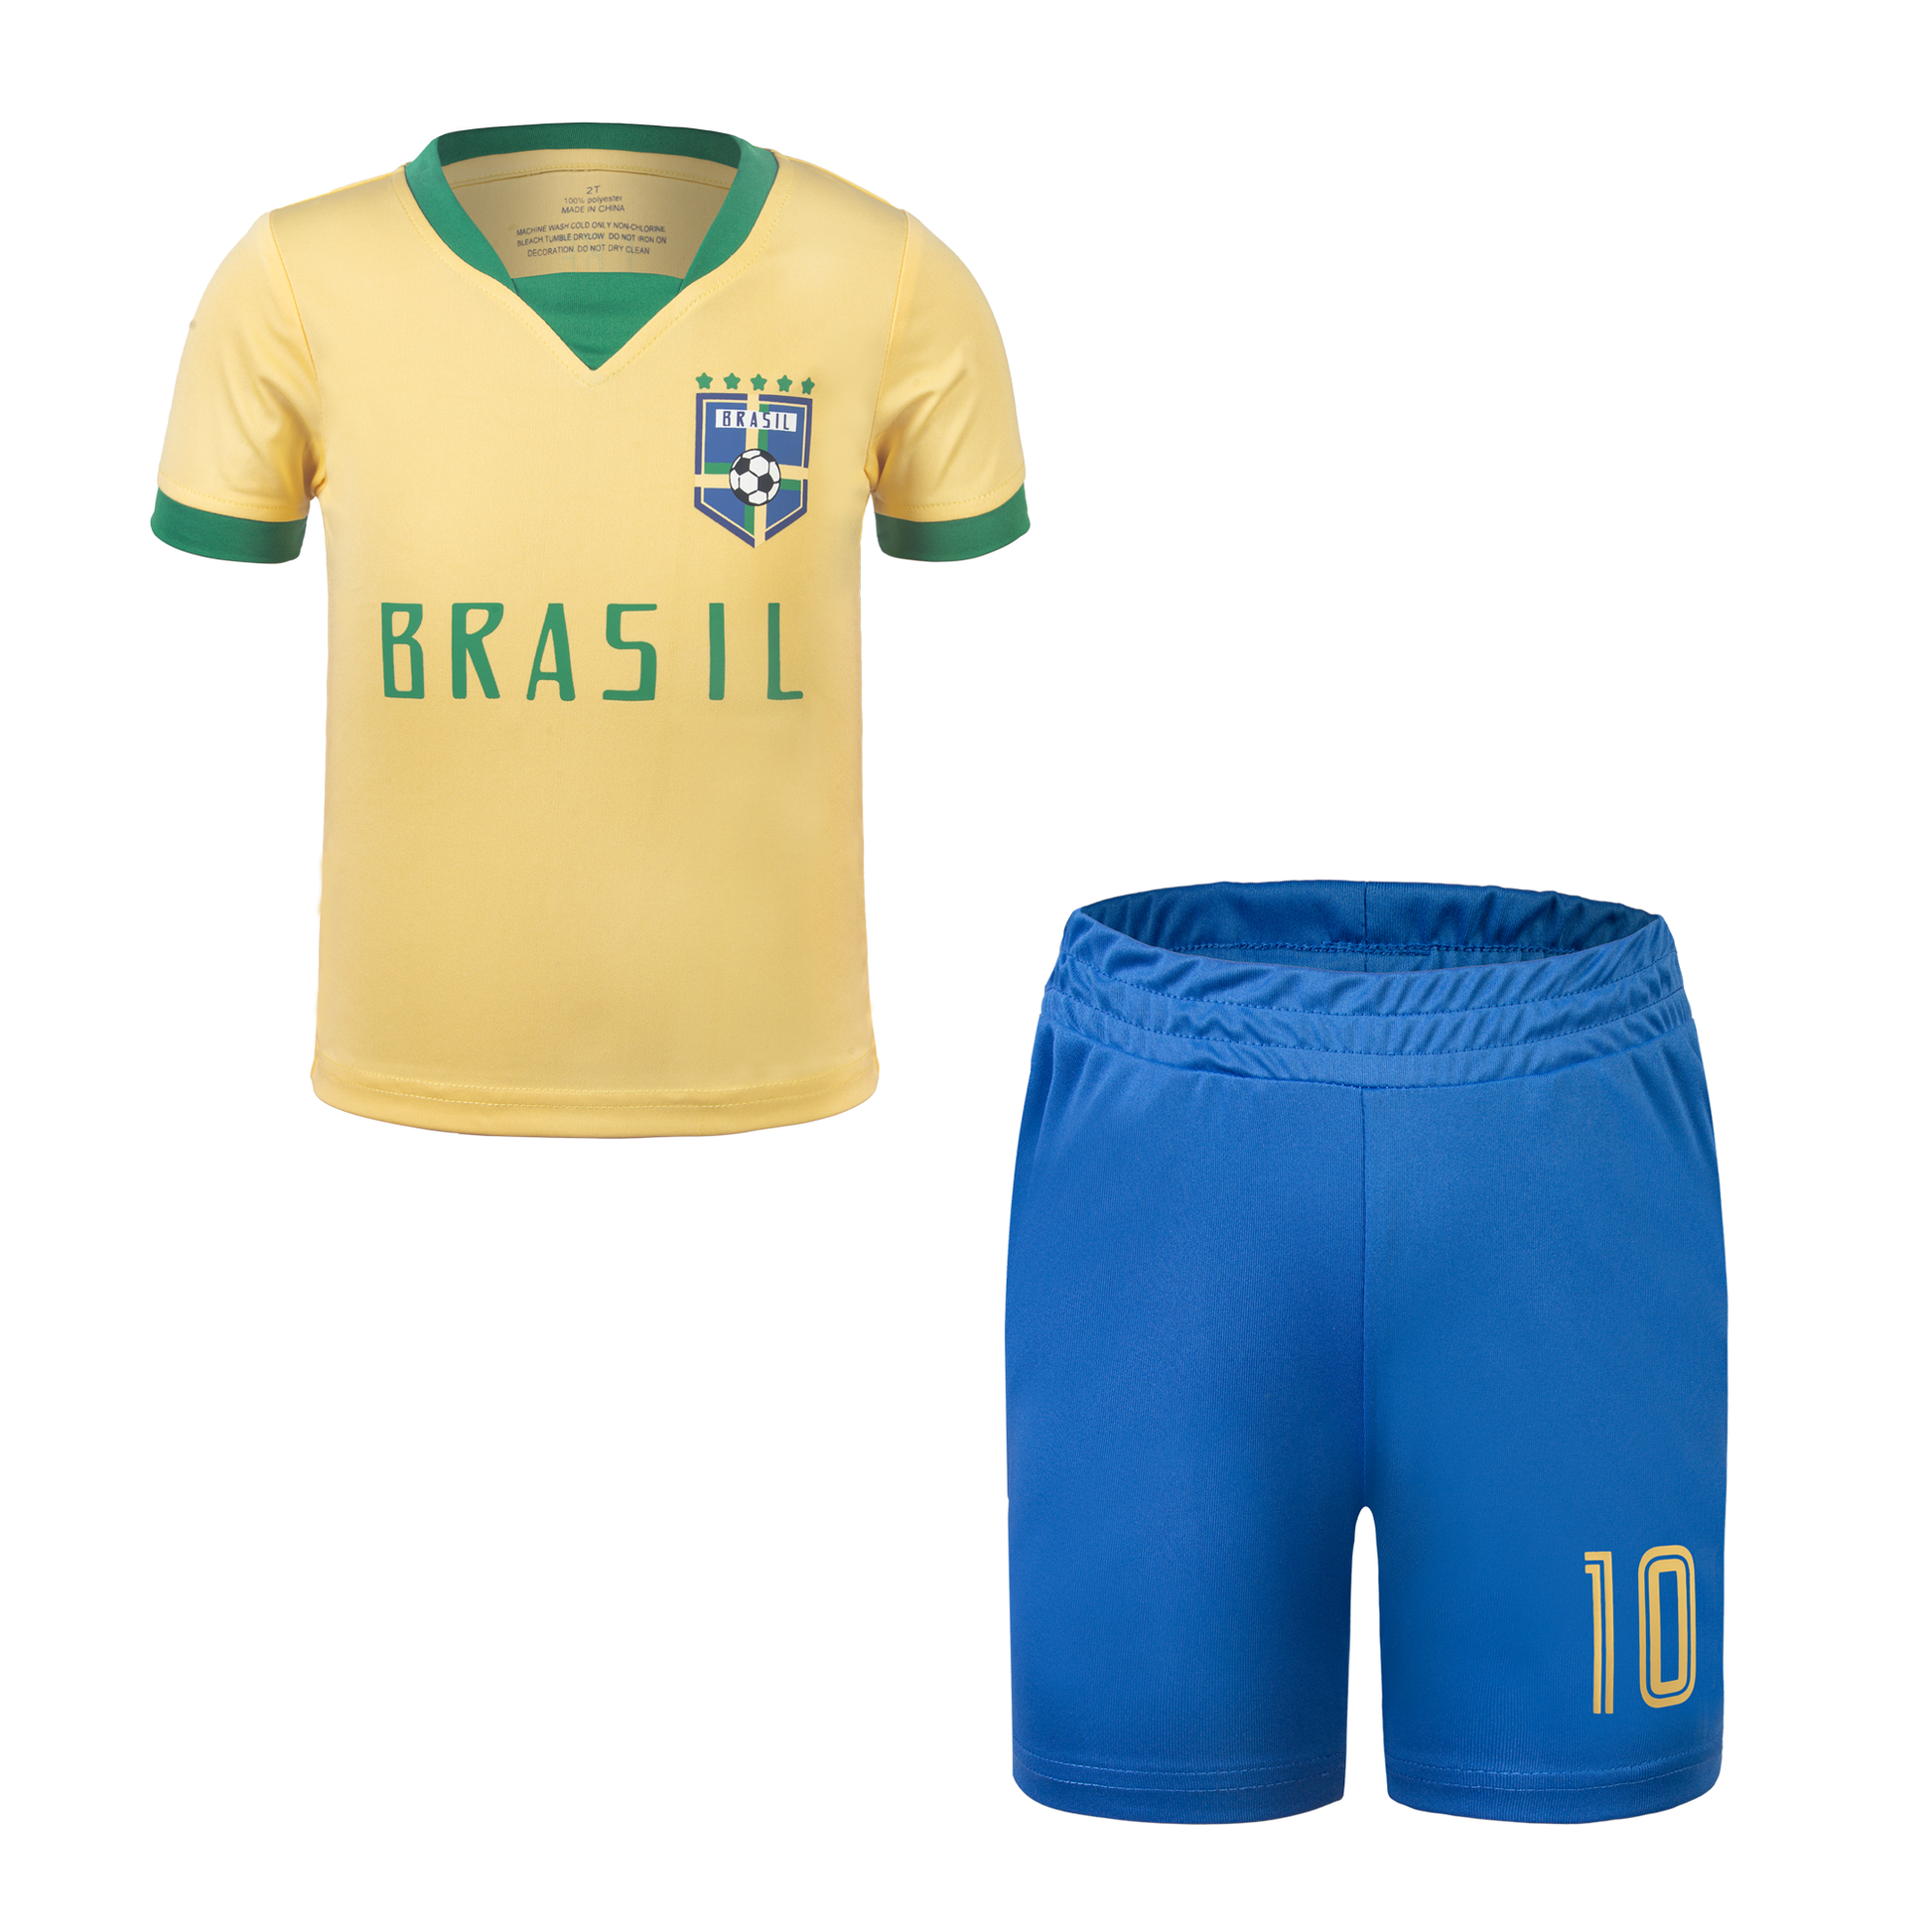 https://shop.bbkstar.com/cdn/shop/files/Brazil-team-kids-soccer-uniform.png?v=1683107608&width=1946